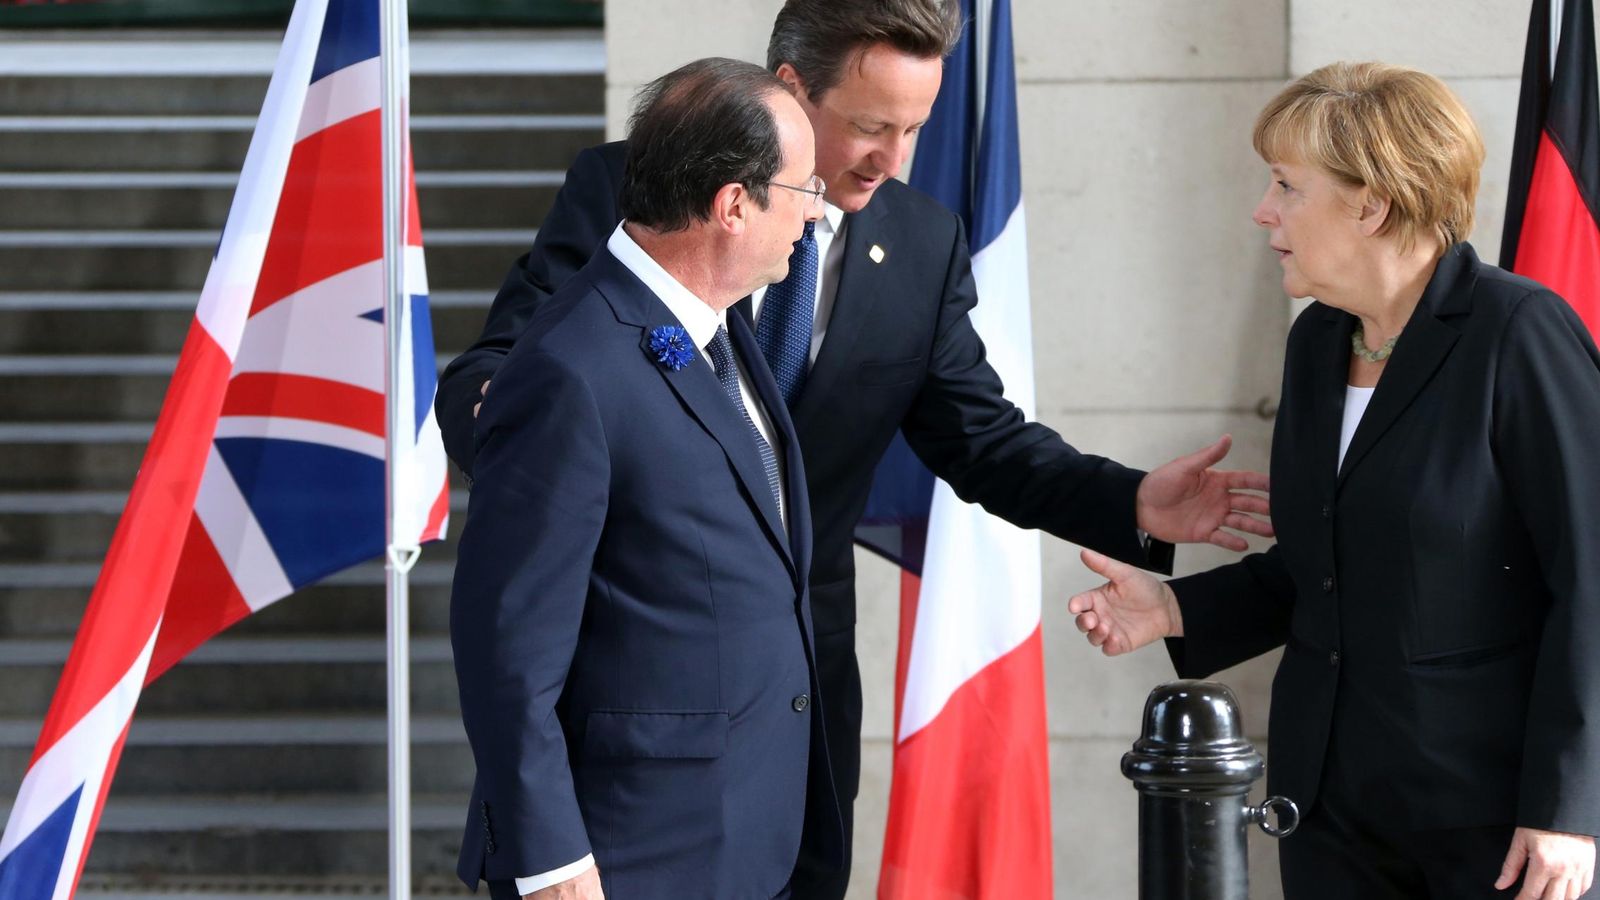 Foto: François Hollande, David Cameron y Angela Merkel, durante un acto de conmemoración del inicio de la Iª Guerra Mundial en Francia, en junio de 2014. (Reuters)